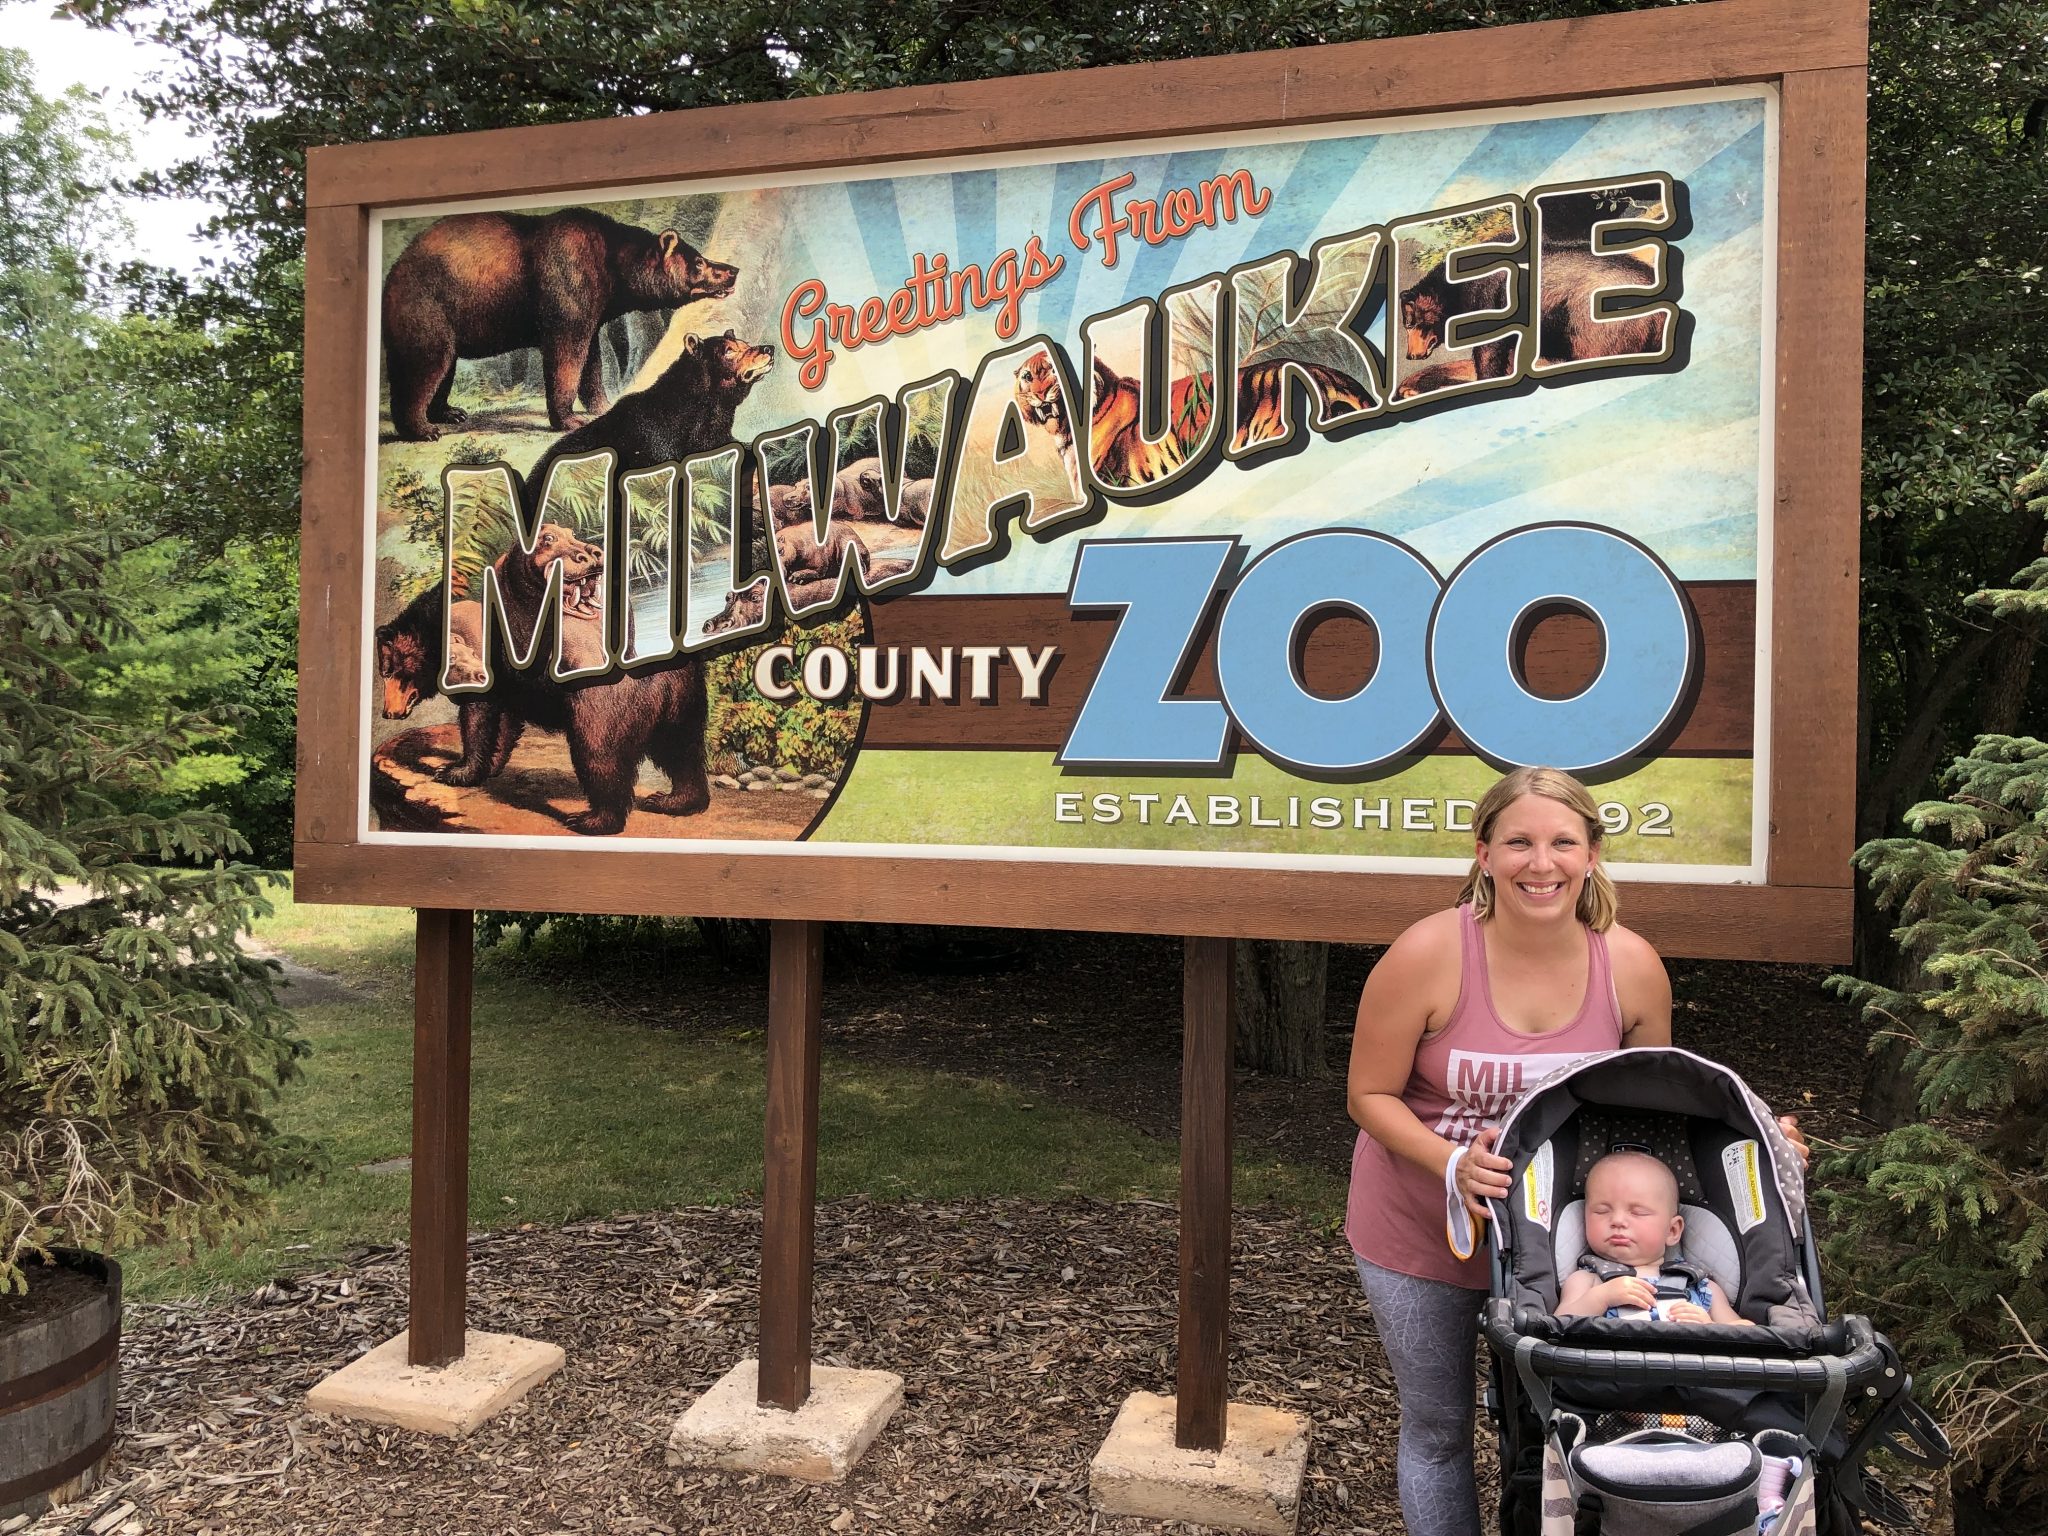 Entertainment Family Free Day at Zoo » Urban Milwaukee